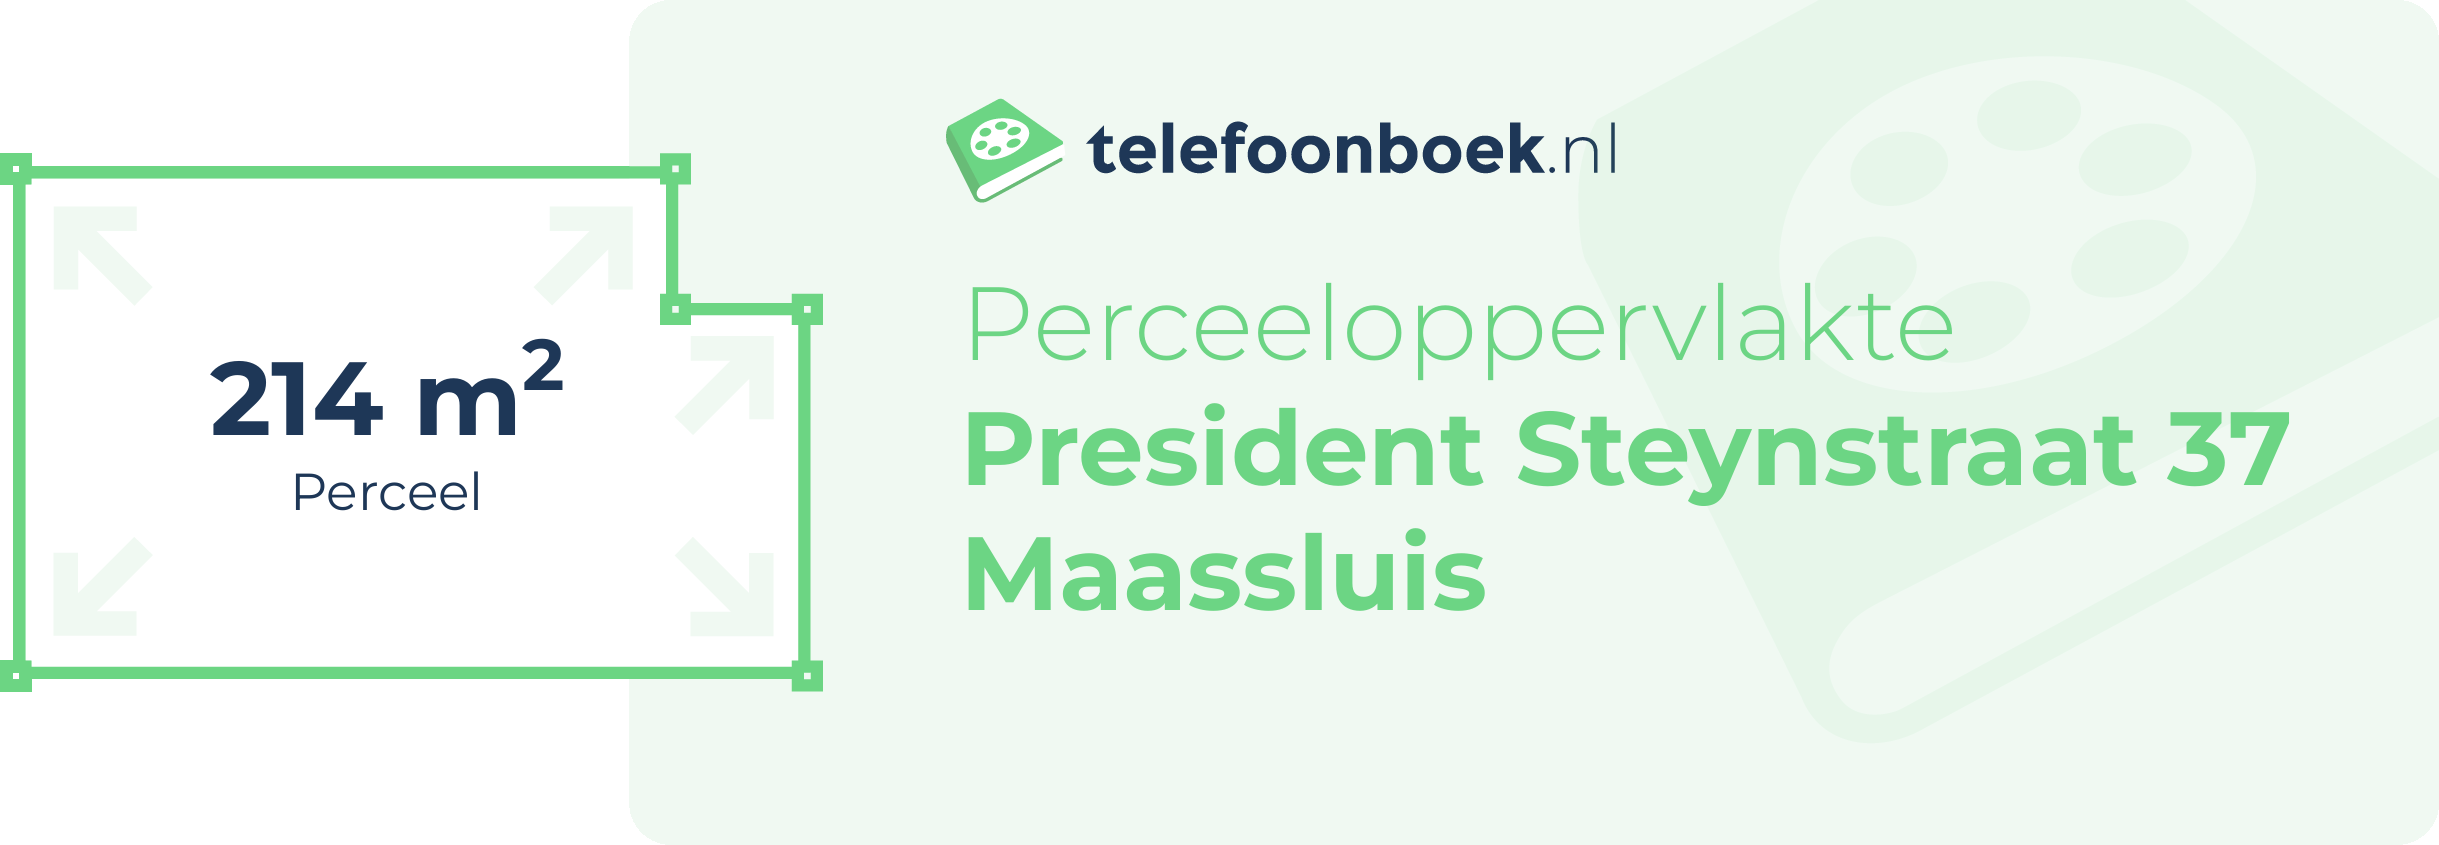 Perceeloppervlakte President Steynstraat 37 Maassluis